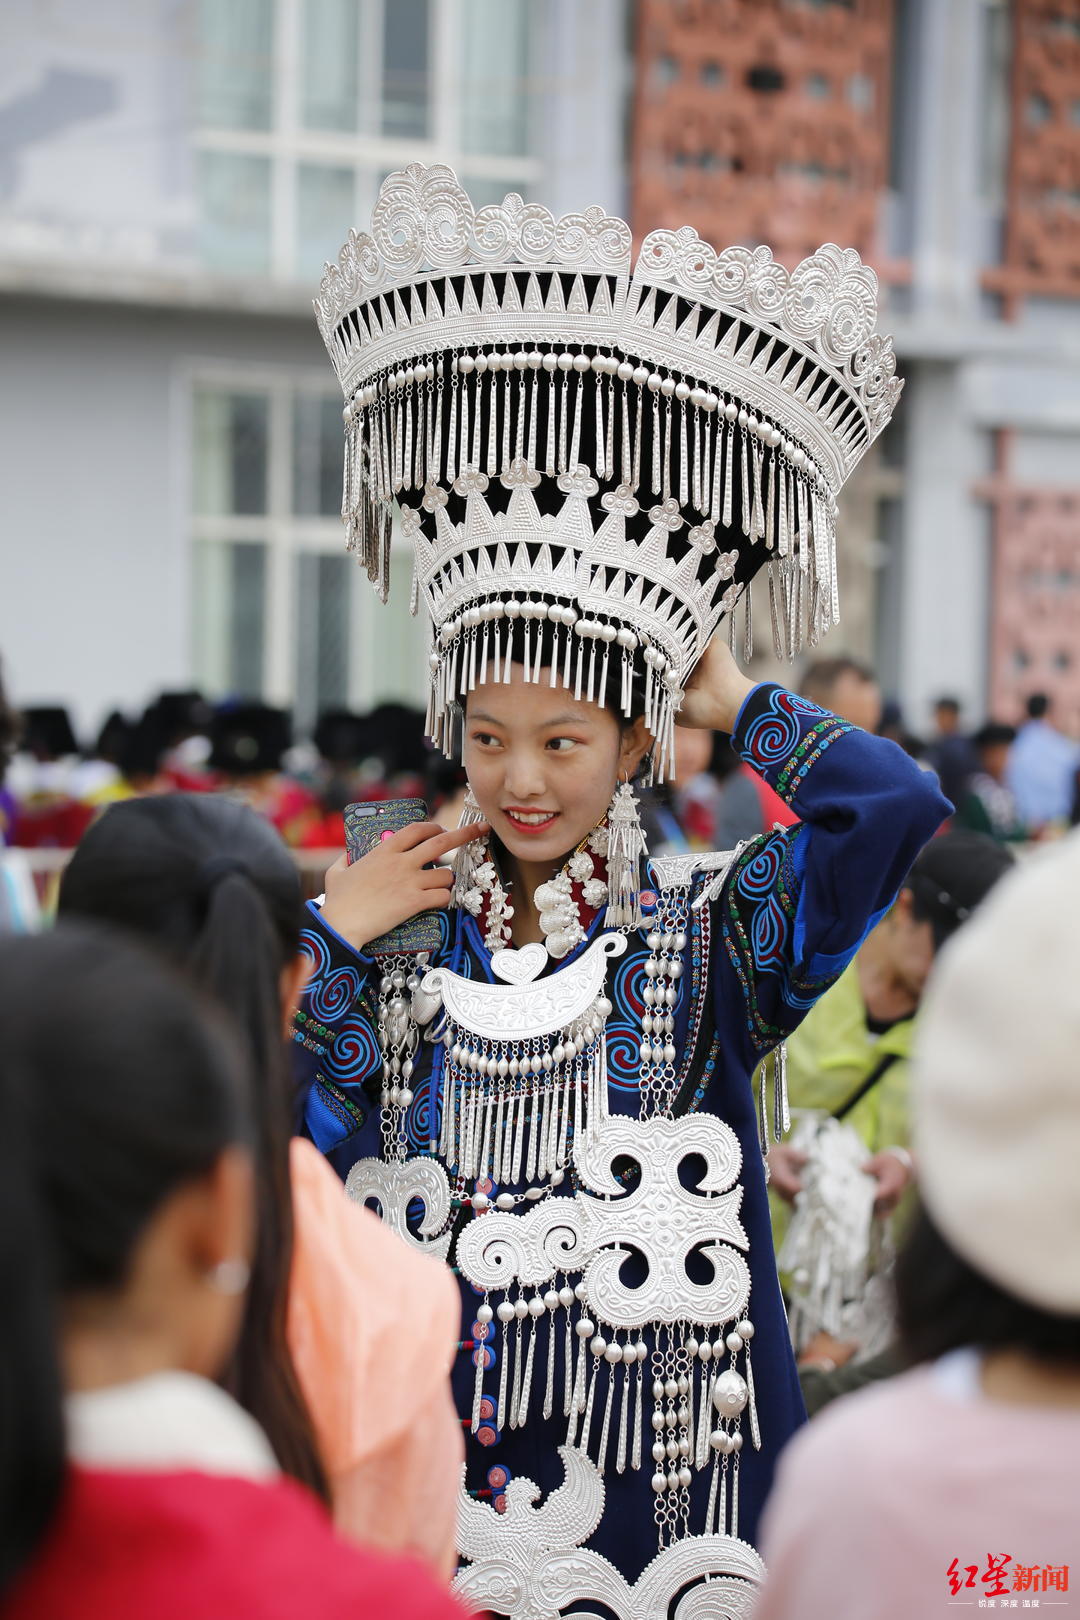 【高清图】凉山布拖民间火把节上穿民族服装的美女们-中关村在线摄影论坛